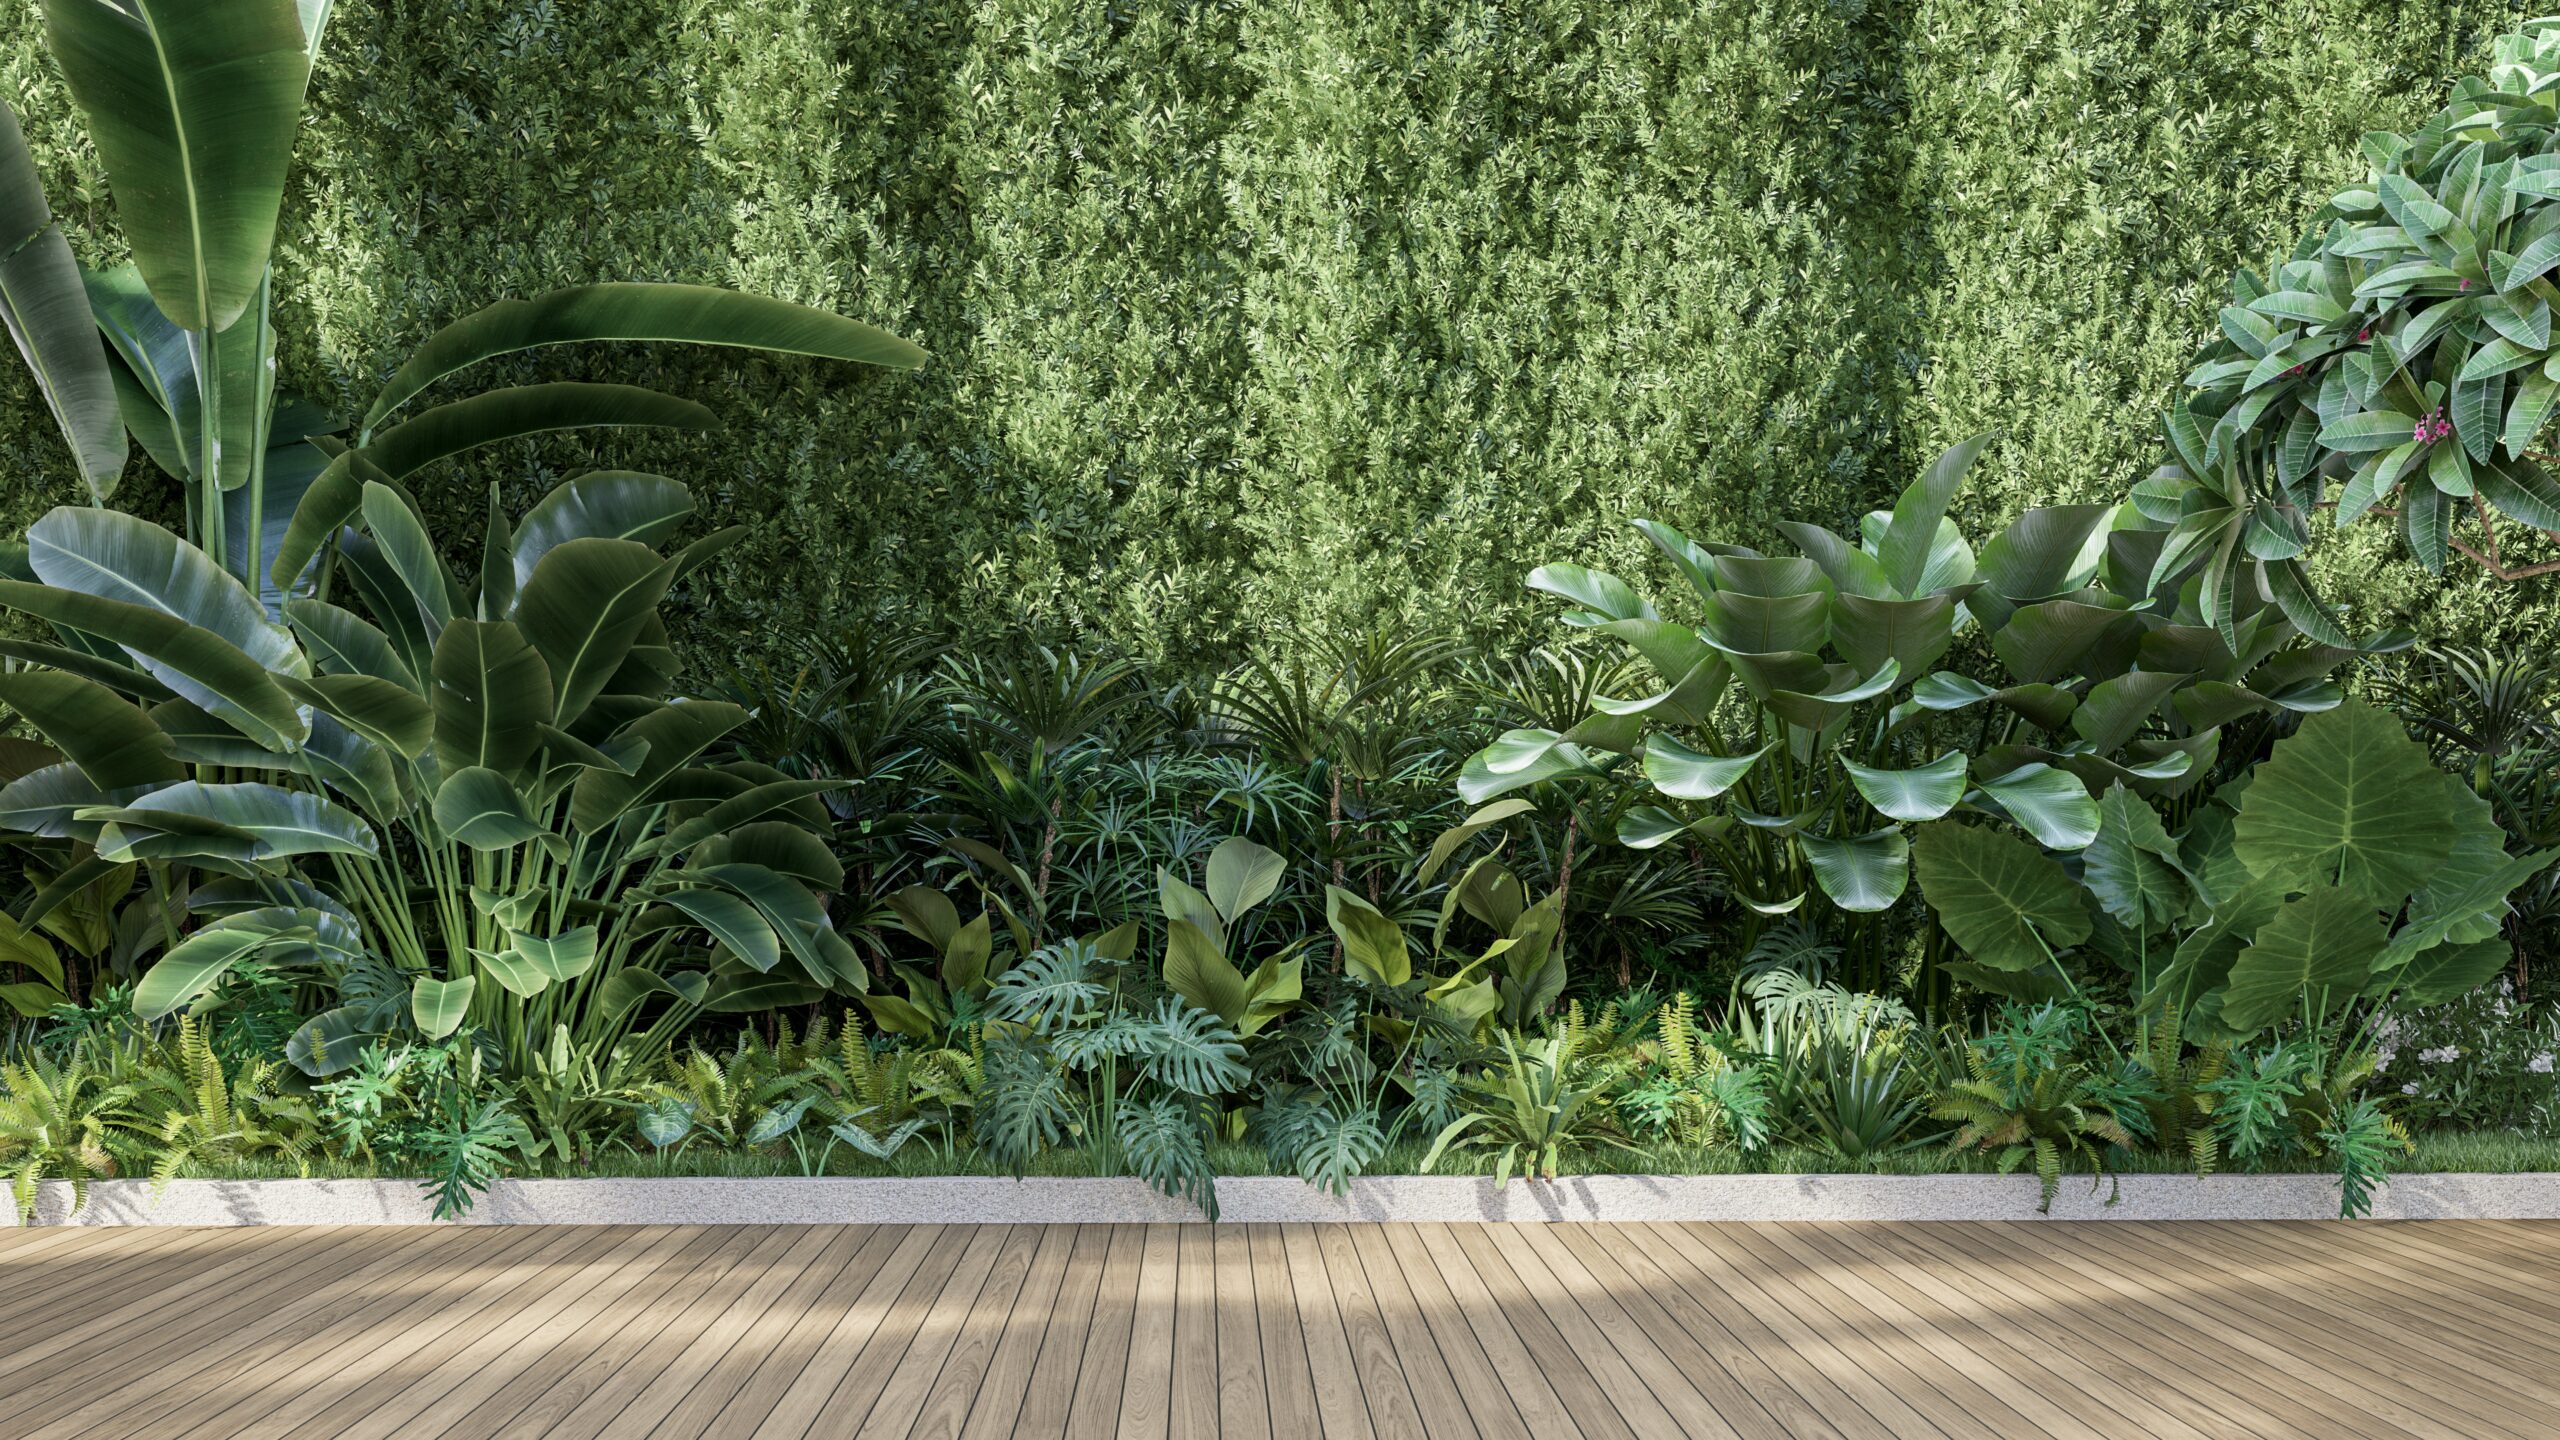 Green walls of a modern garden